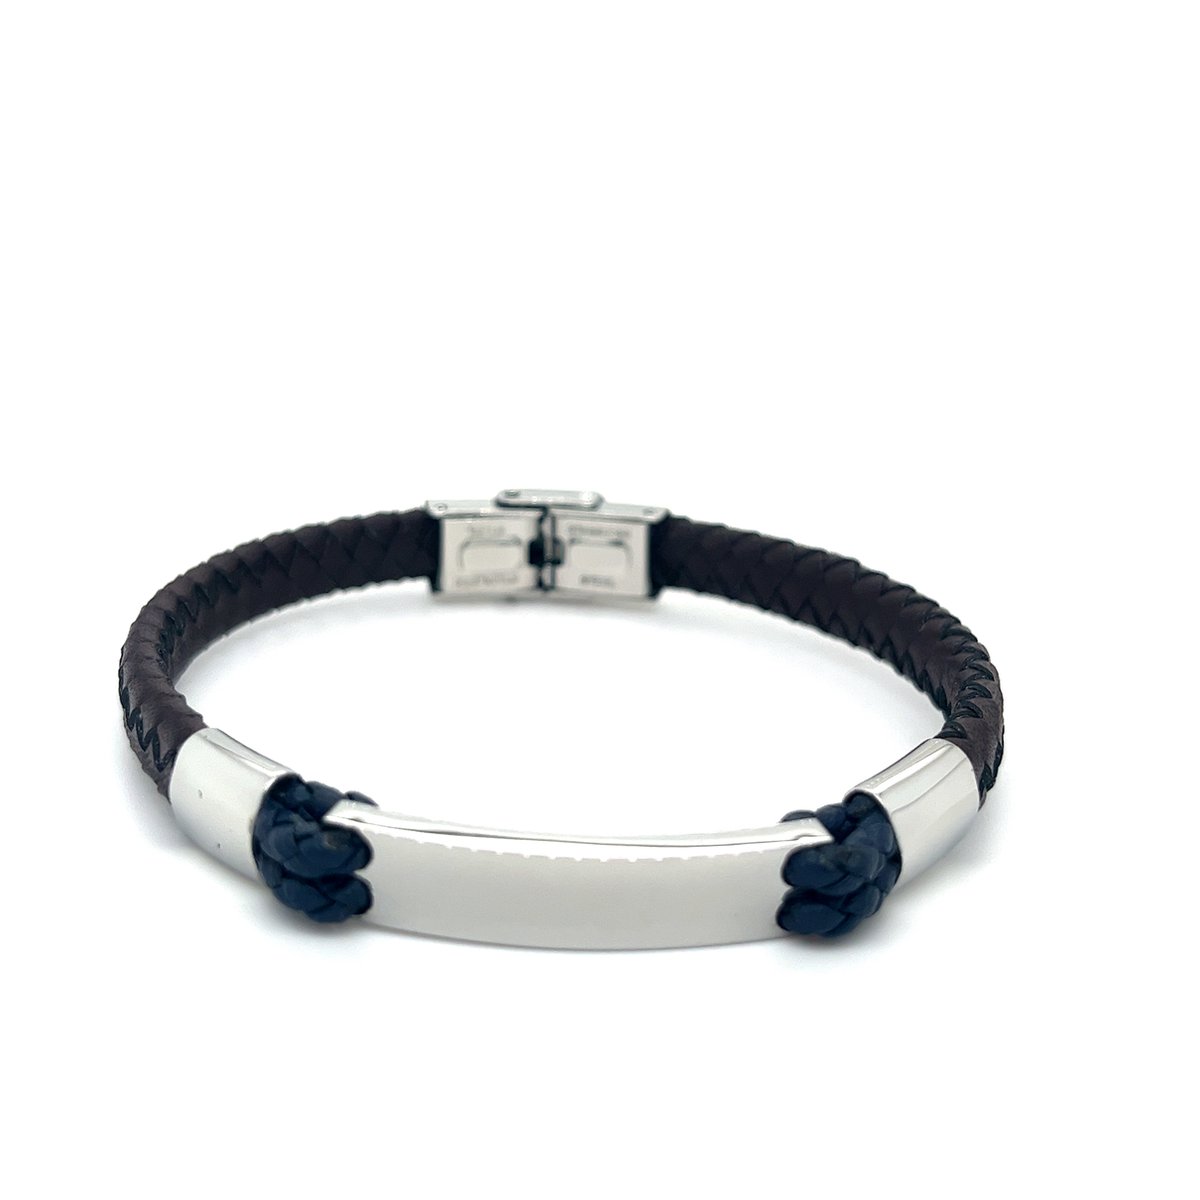 Heren armband - Armband Leer - Bruin/ Blauw gevlochten Armband met haak sluiting- Stainless steel - valentijn cadeautje voor hem - Merkloos